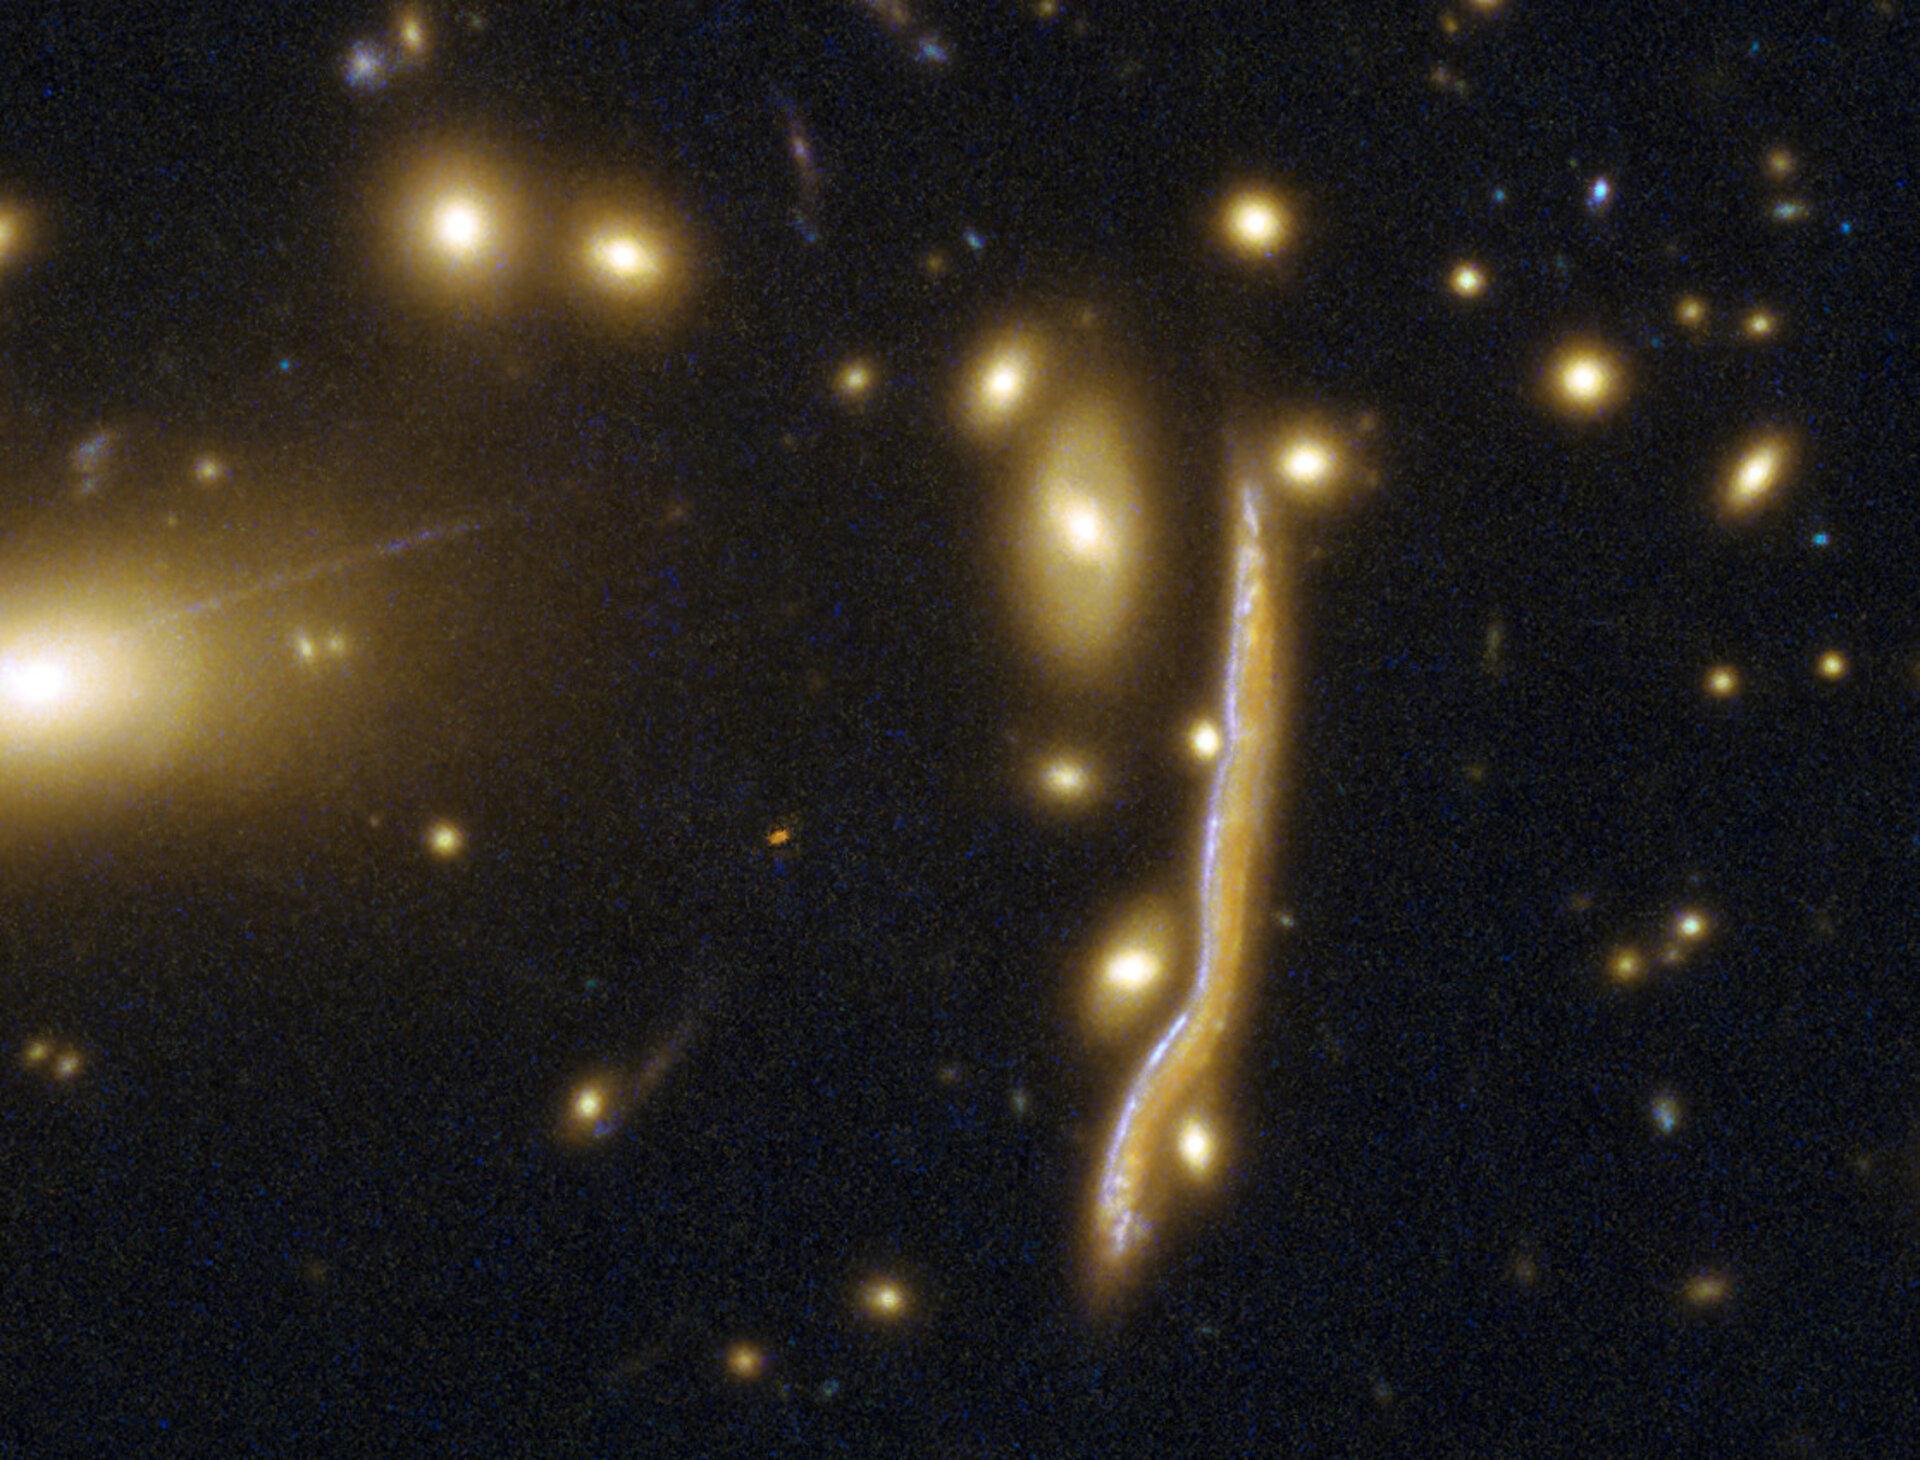 A six milliards d'années-lumière de la Terre, la galaxie du Cosmic Snake tire son nom de son apparence de serpent allongé. Cette déformation visuelle est due à une lentille gravitationnelle. [CC BY 4.0 - ESA/Hubble, NASA]